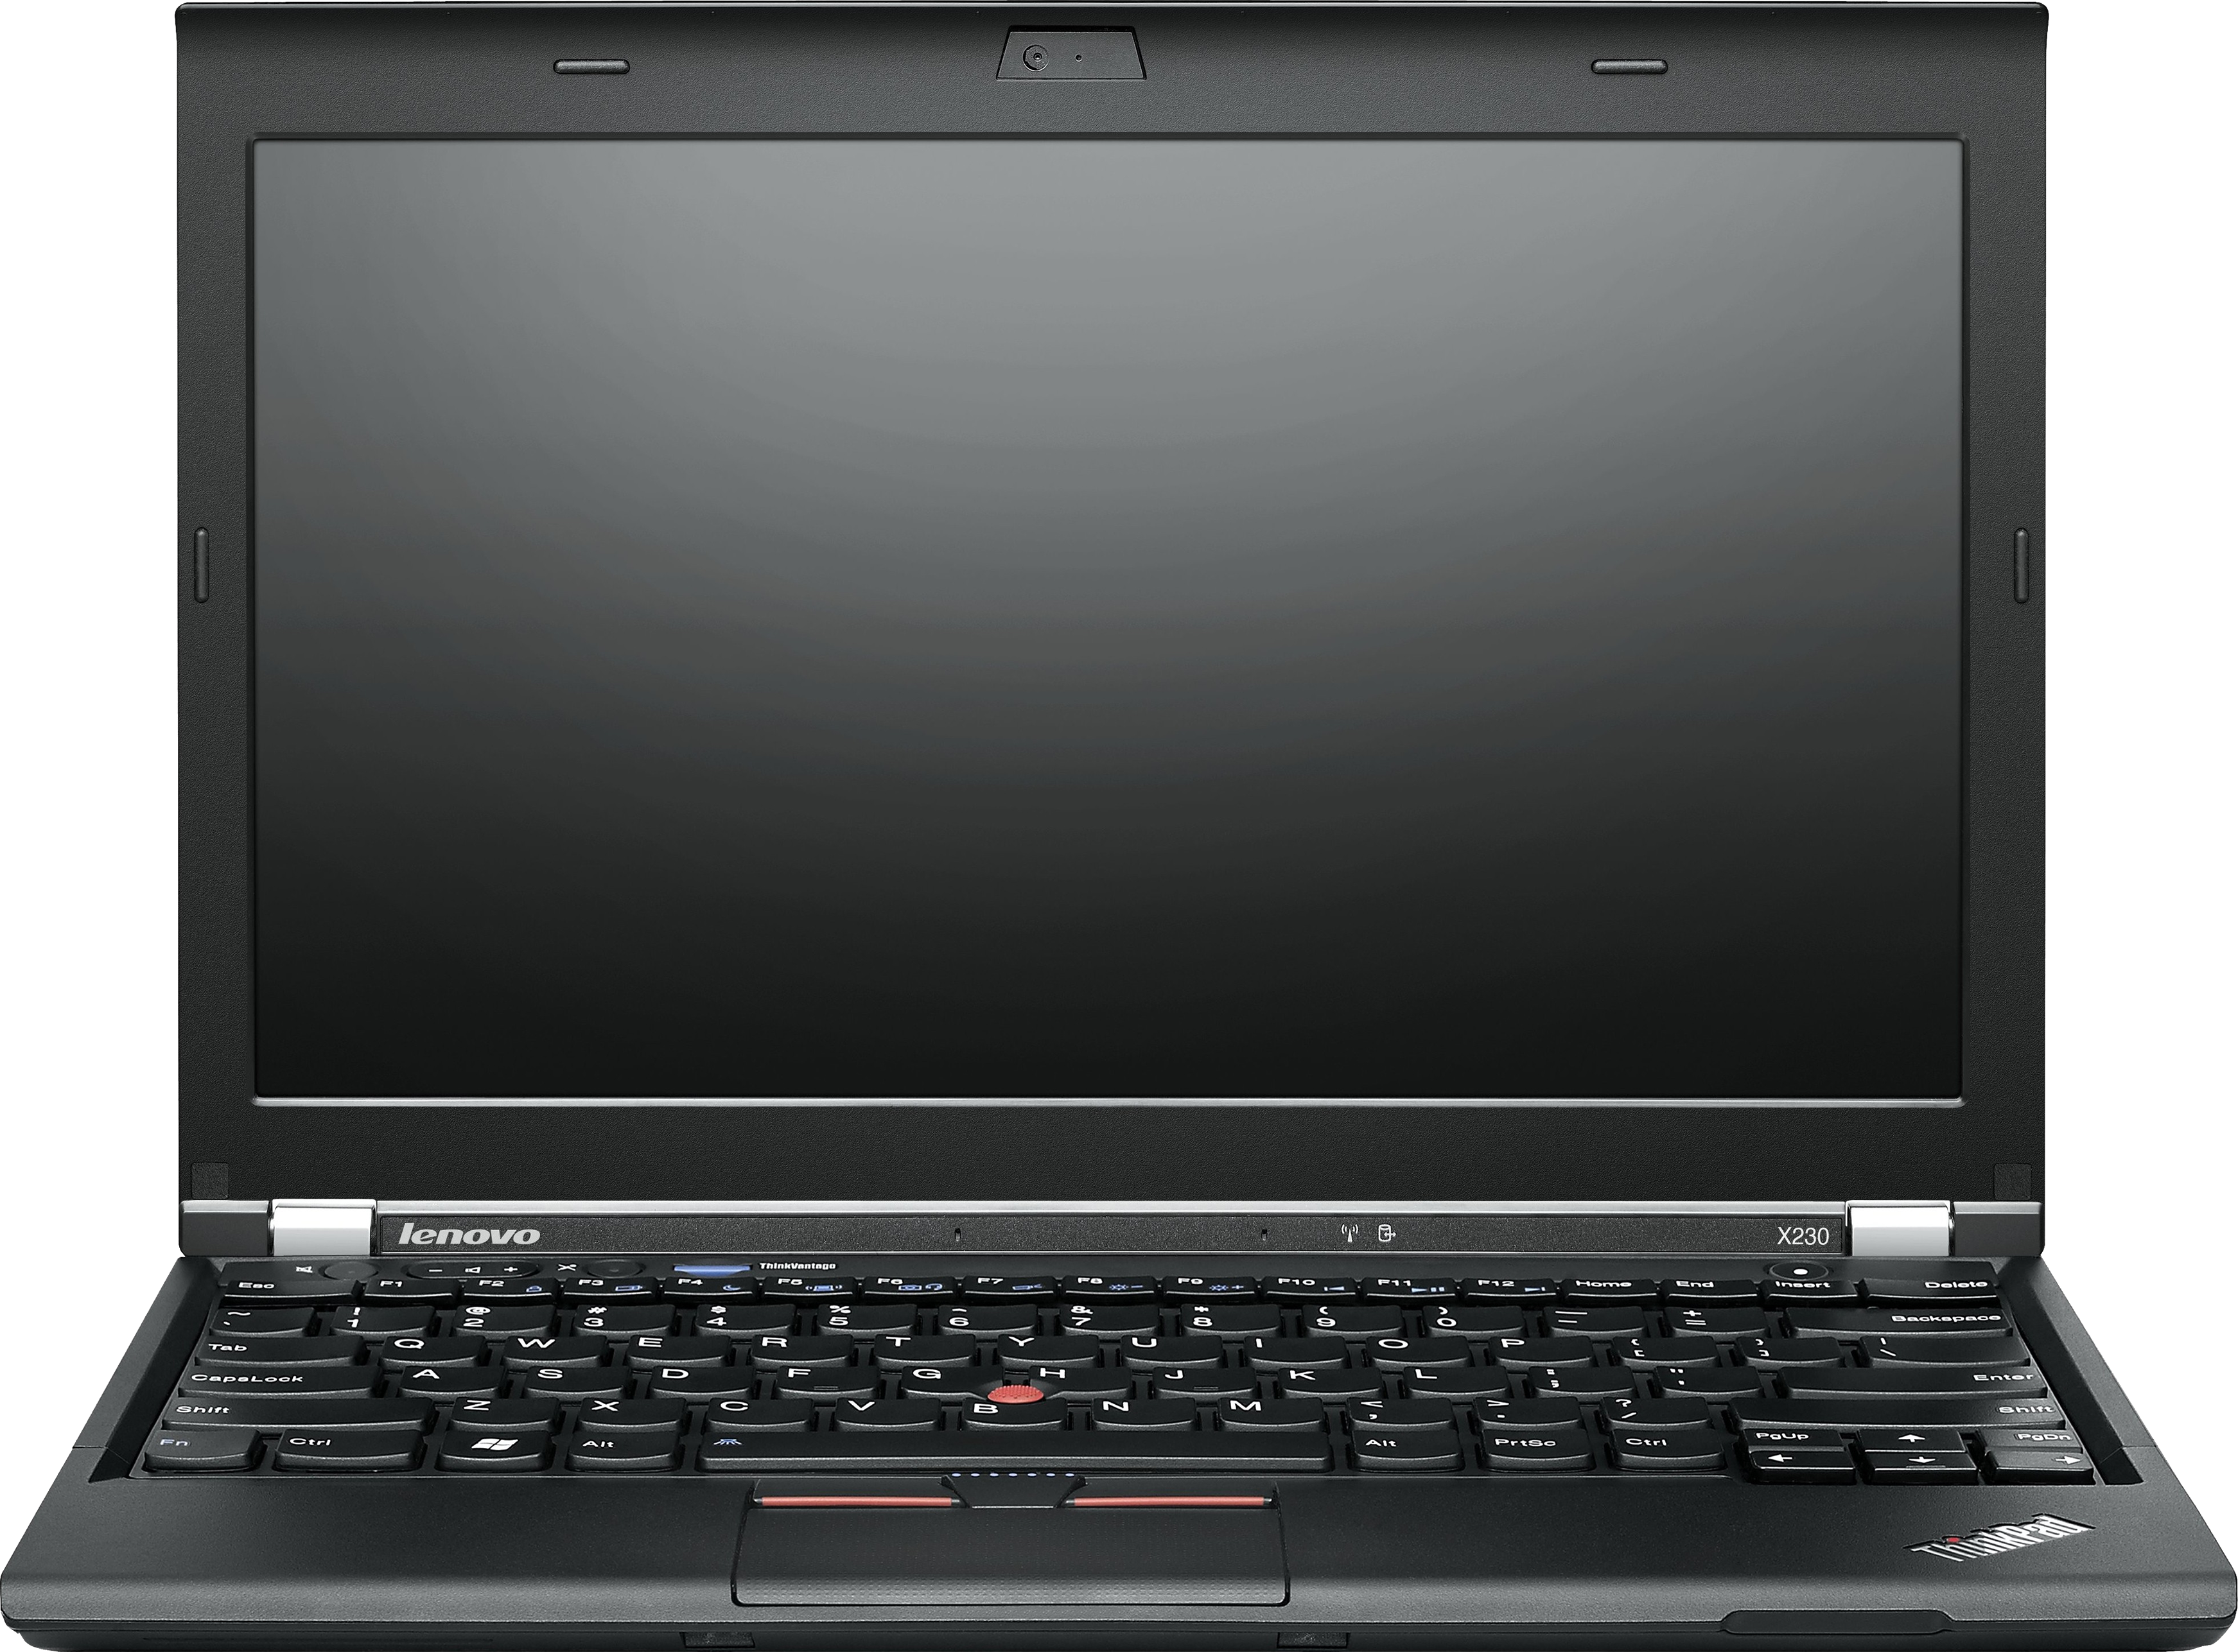 Laptop HD PNG - 92607